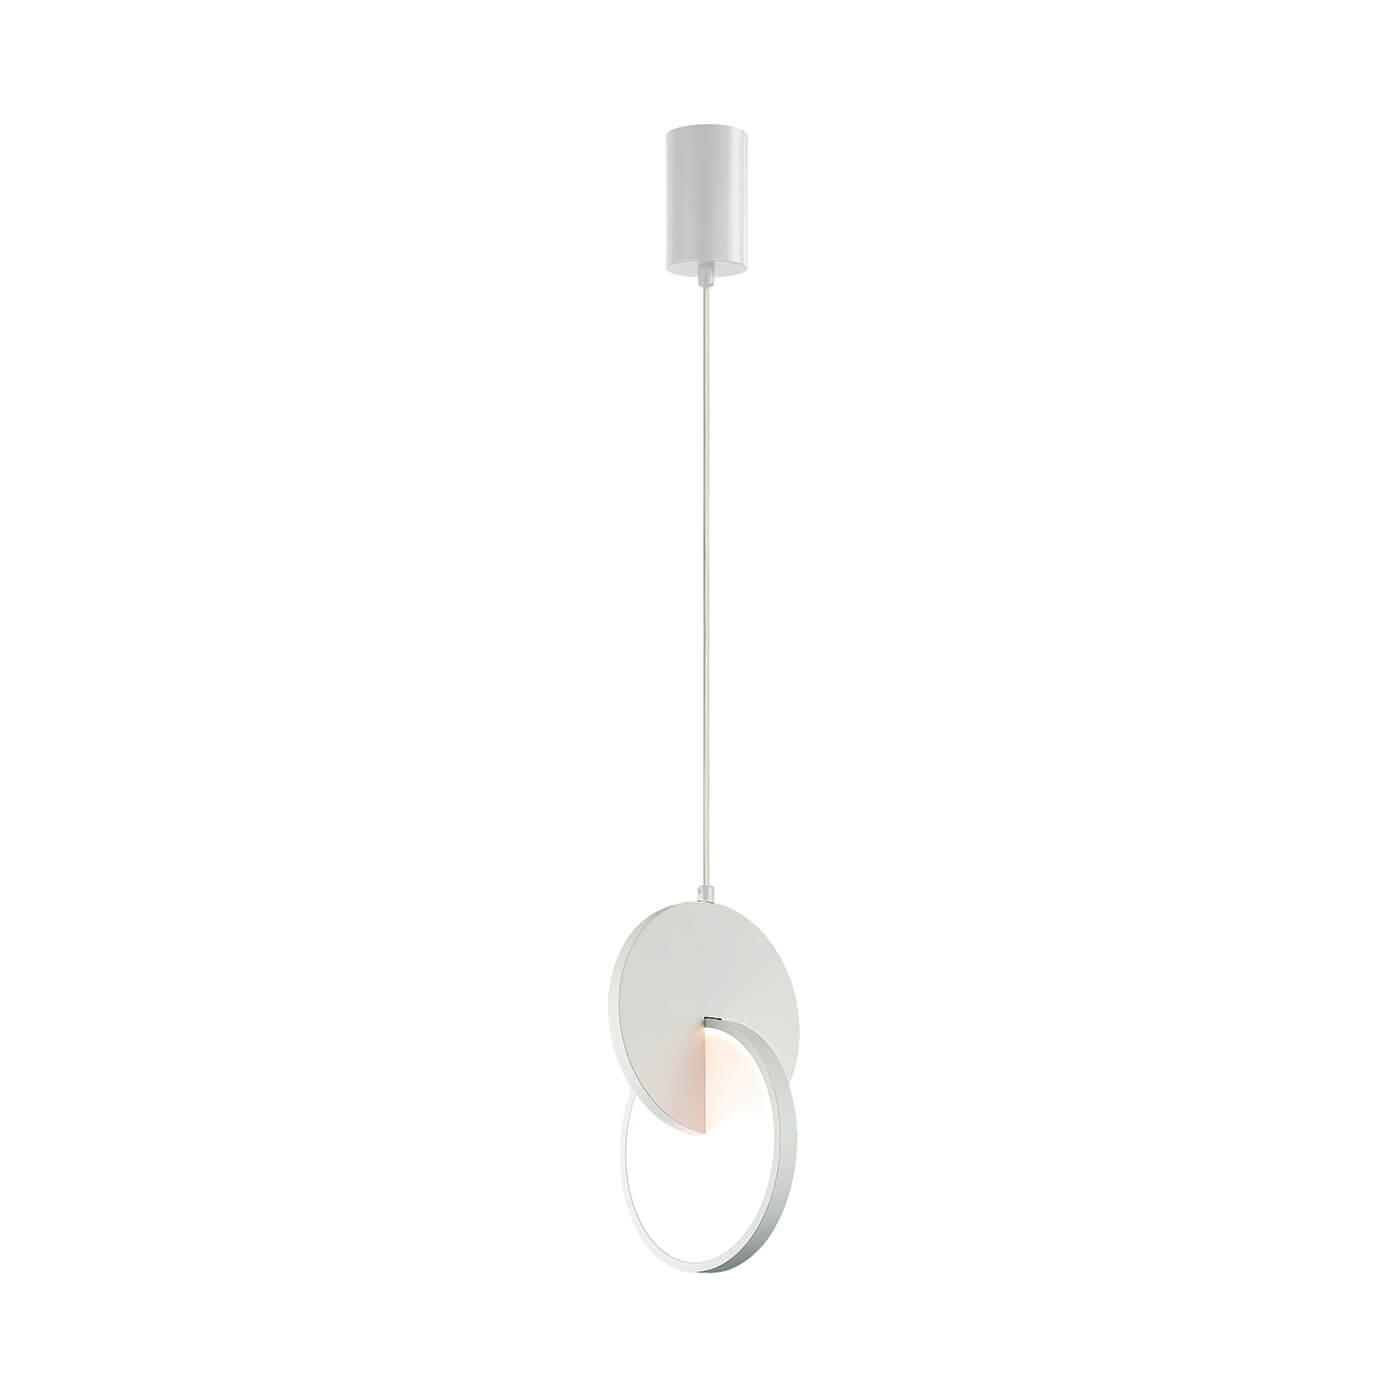 Pendul modern MAGIC alb cu LED 5W, un element elegant in decorul tau.